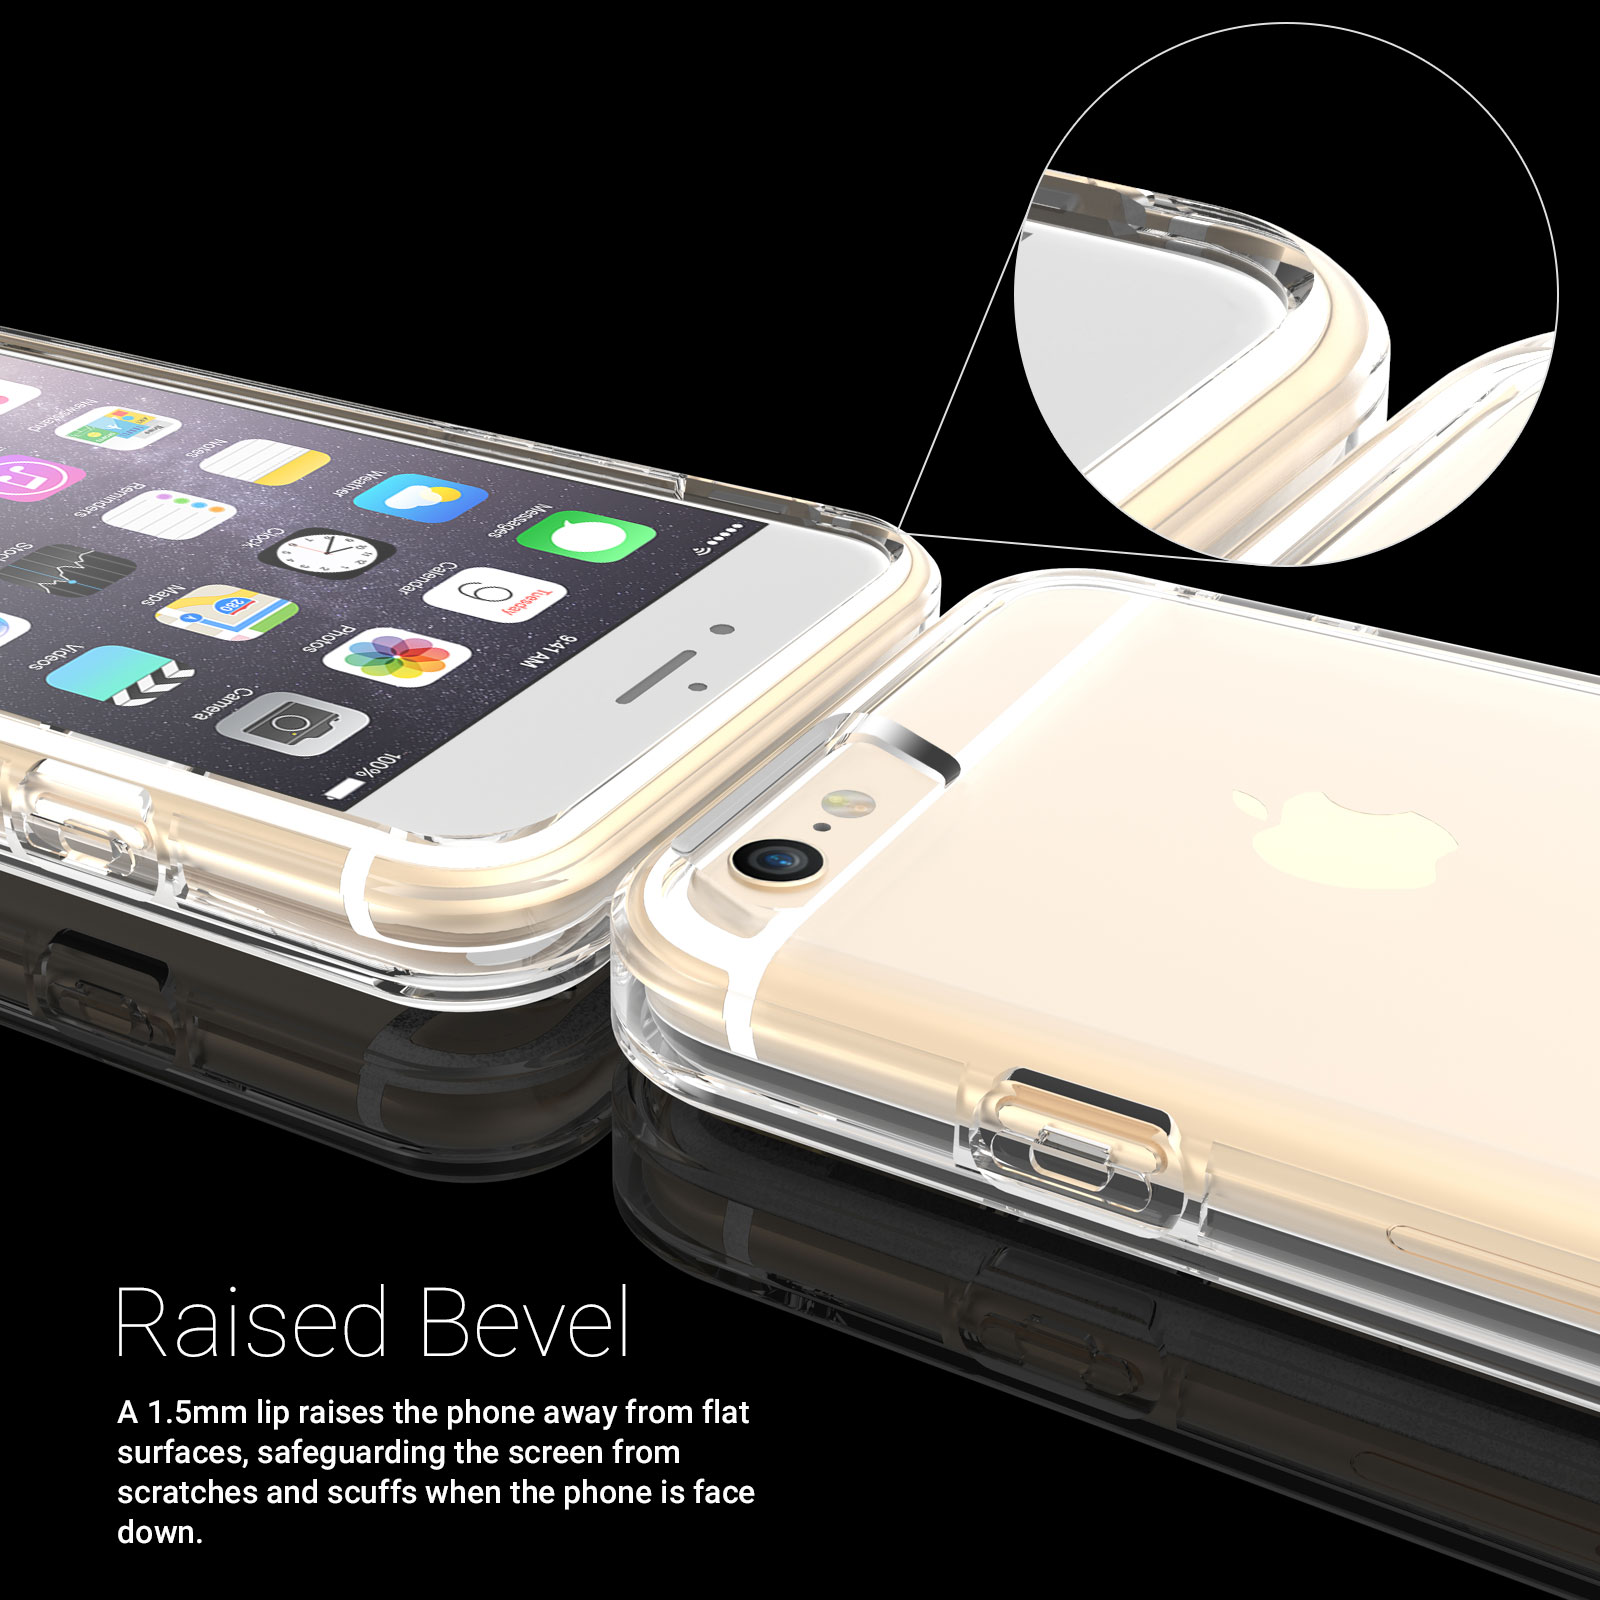 Caseflex iPhone 6 / 6s Plus  Reinforced TPU Gel Case - Clear